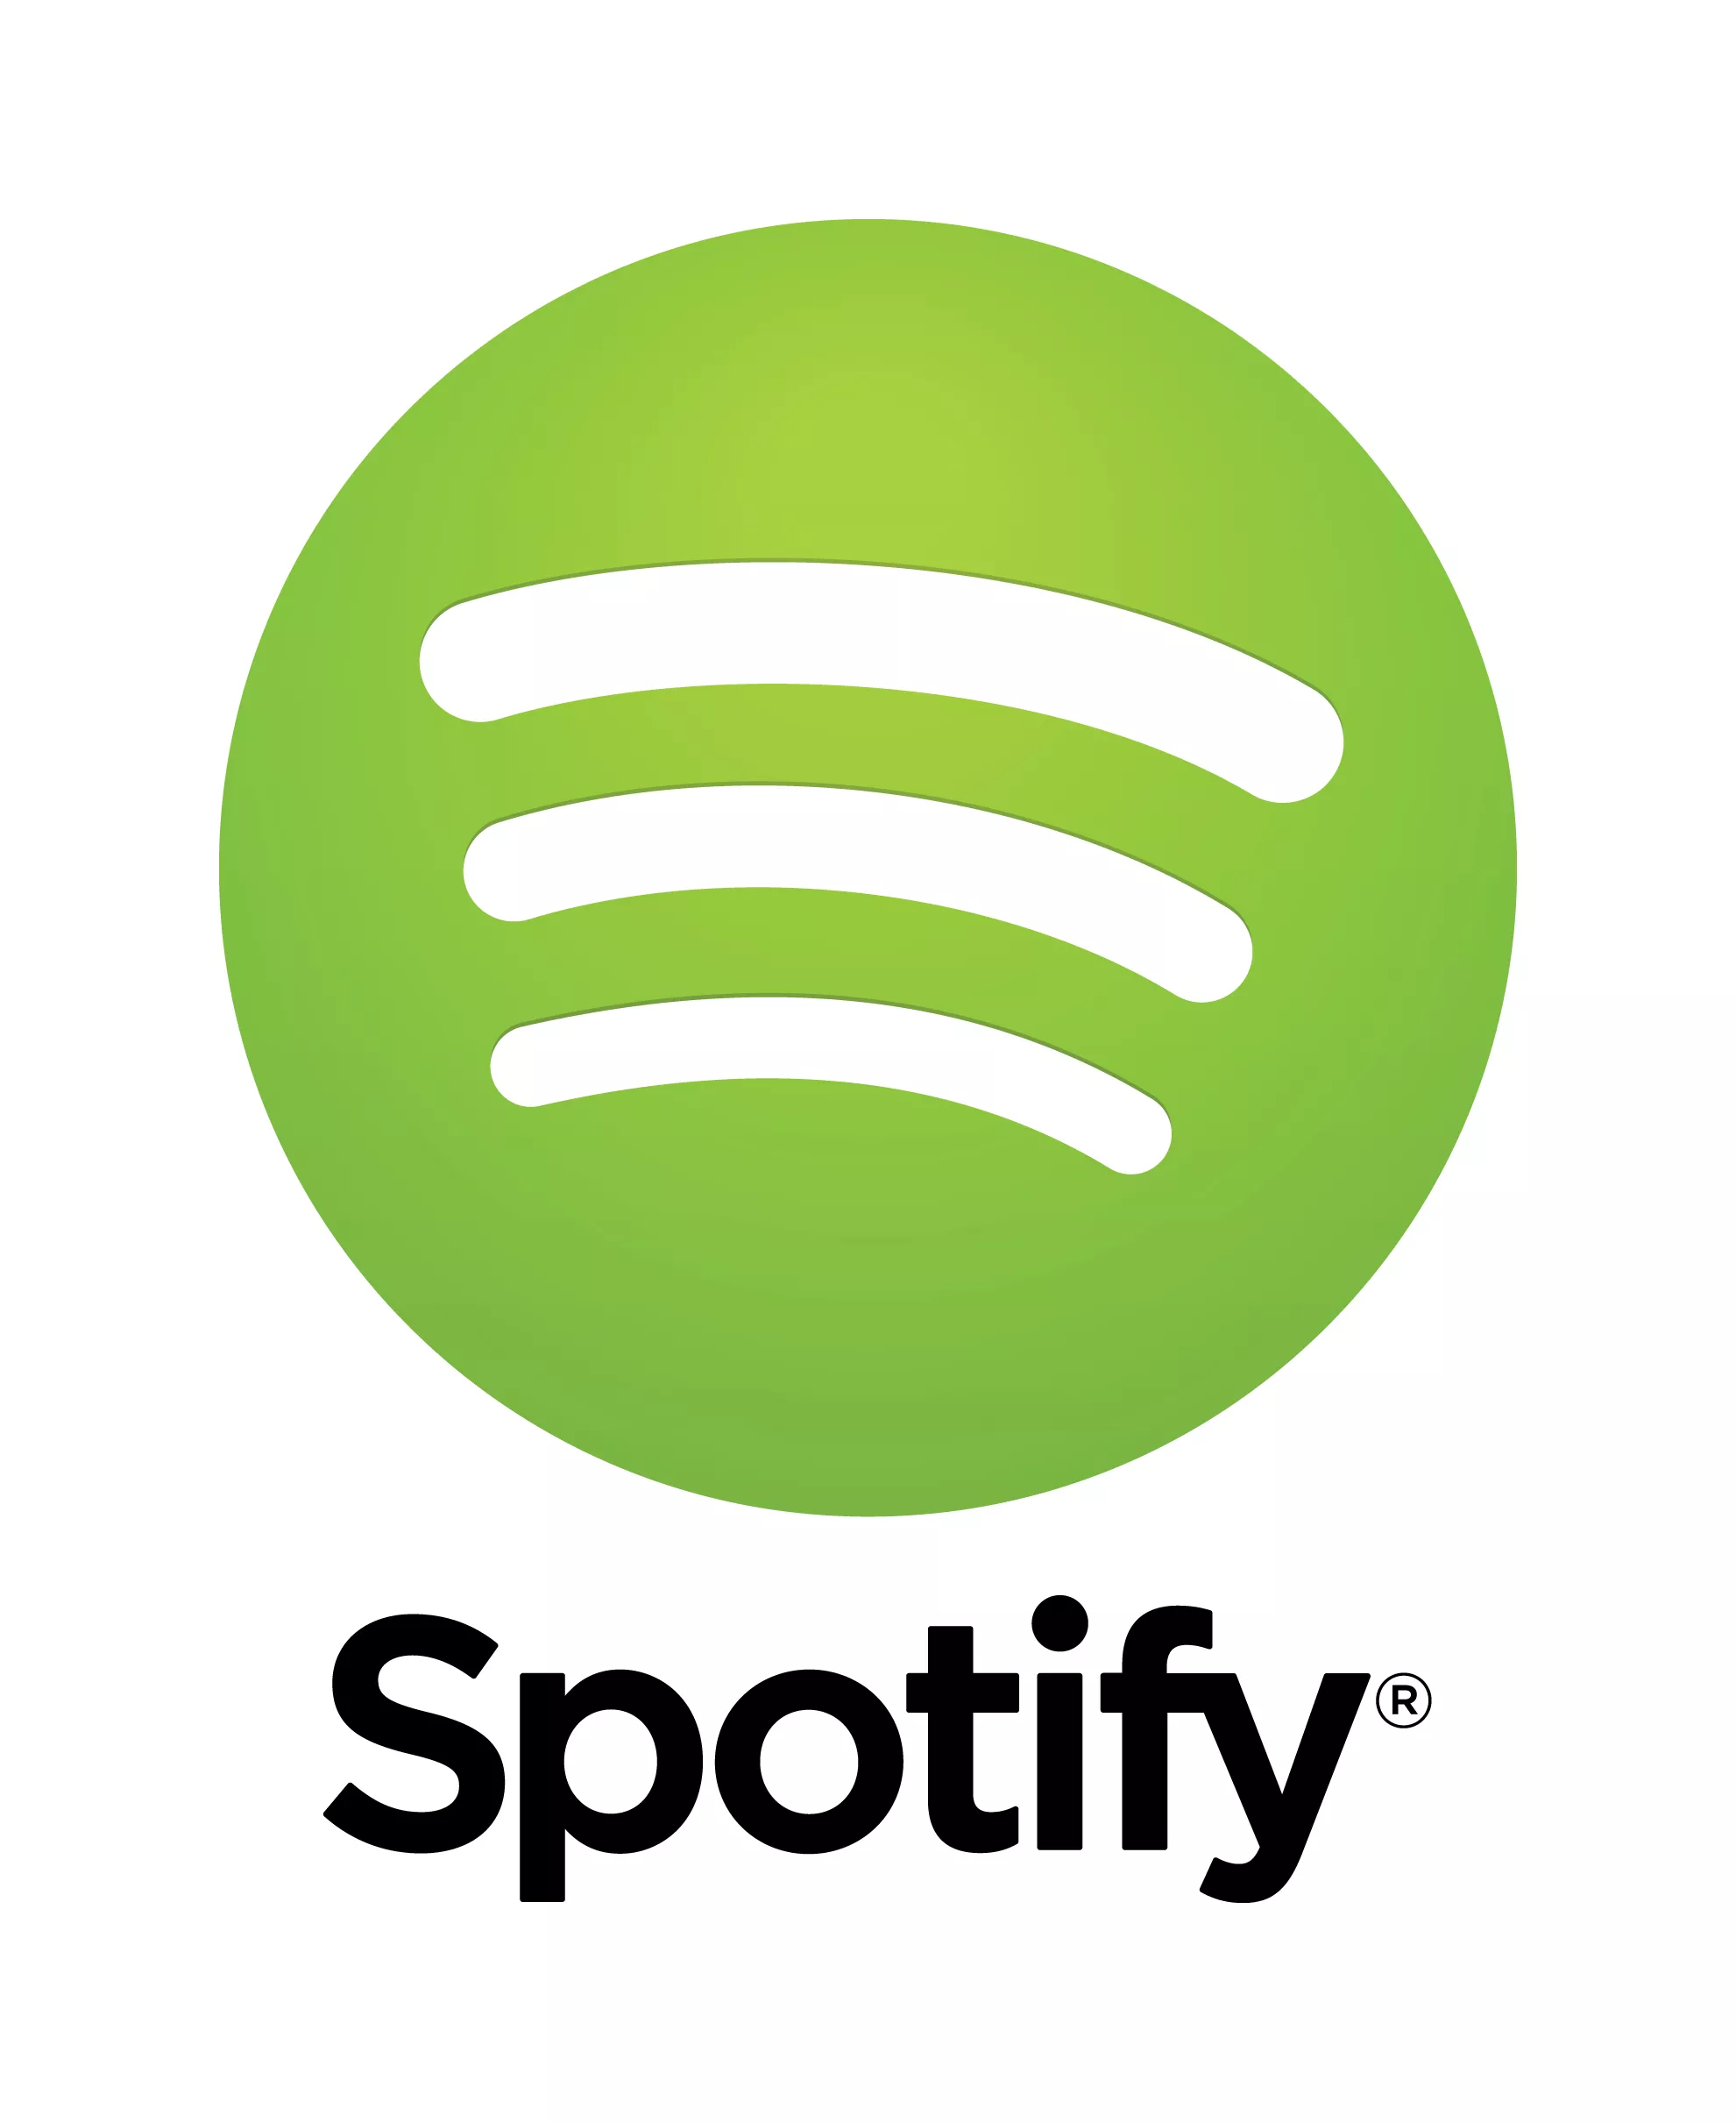 De store plateselskapene presser Spotify